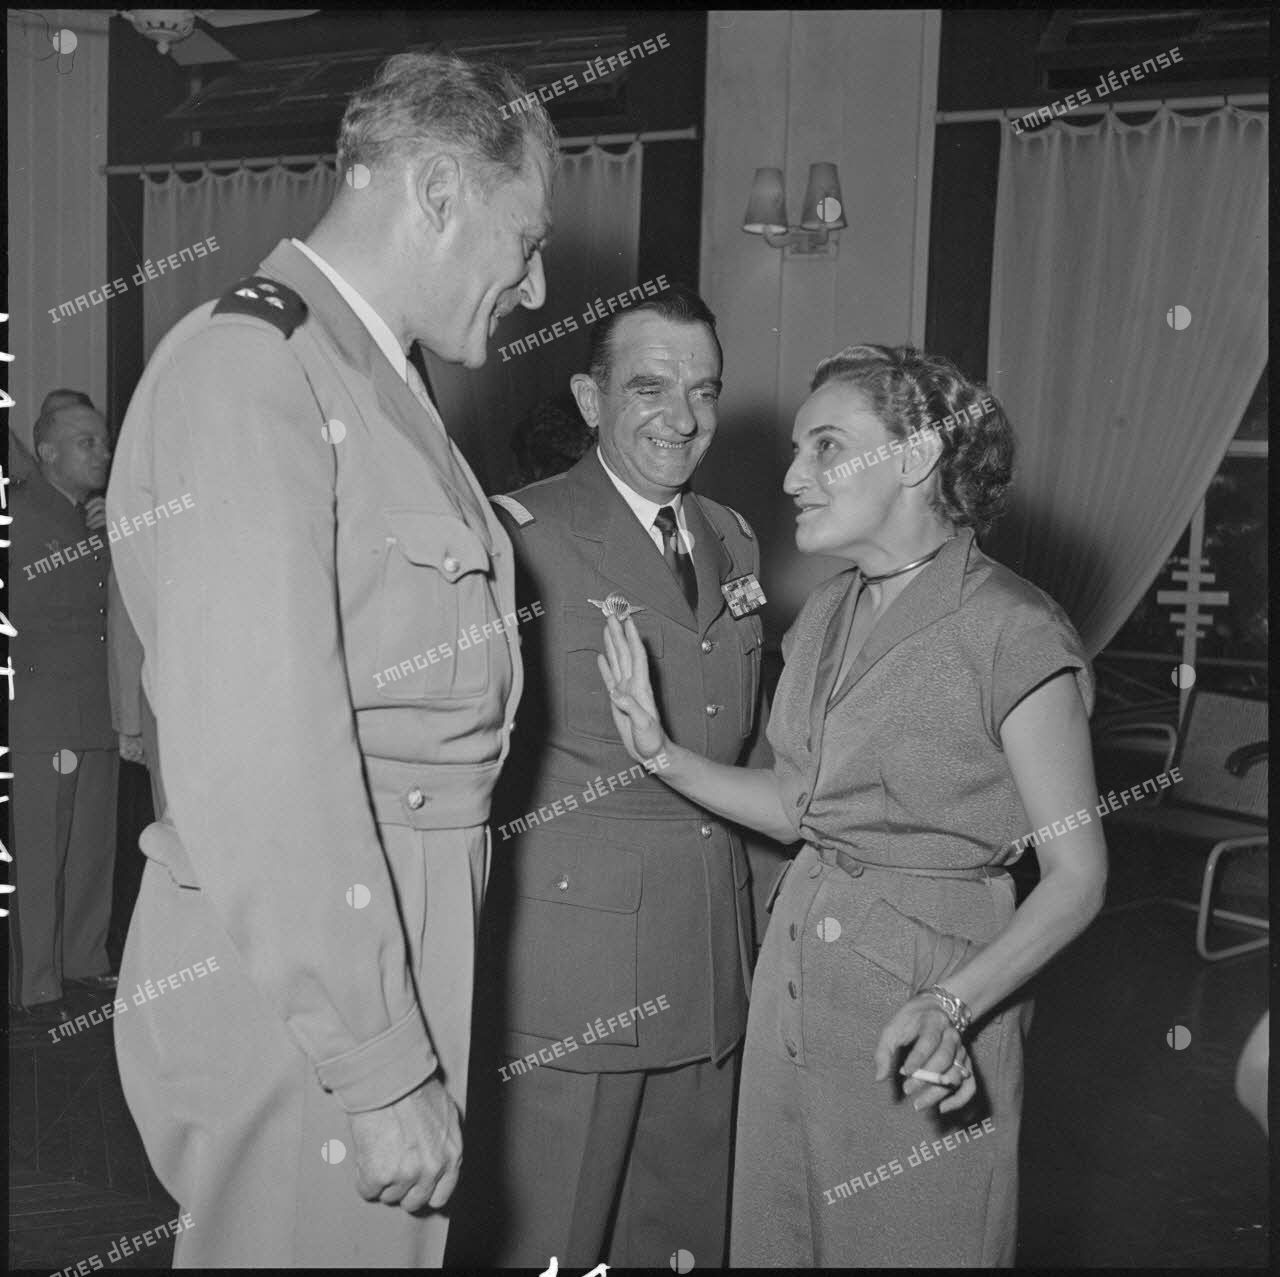 Le général Gilles, commandant des troupes aéroportées (TAP) en Extrême-Orient (au centre), s'entretient avec des convives lors de la réception organisée pour son départ.